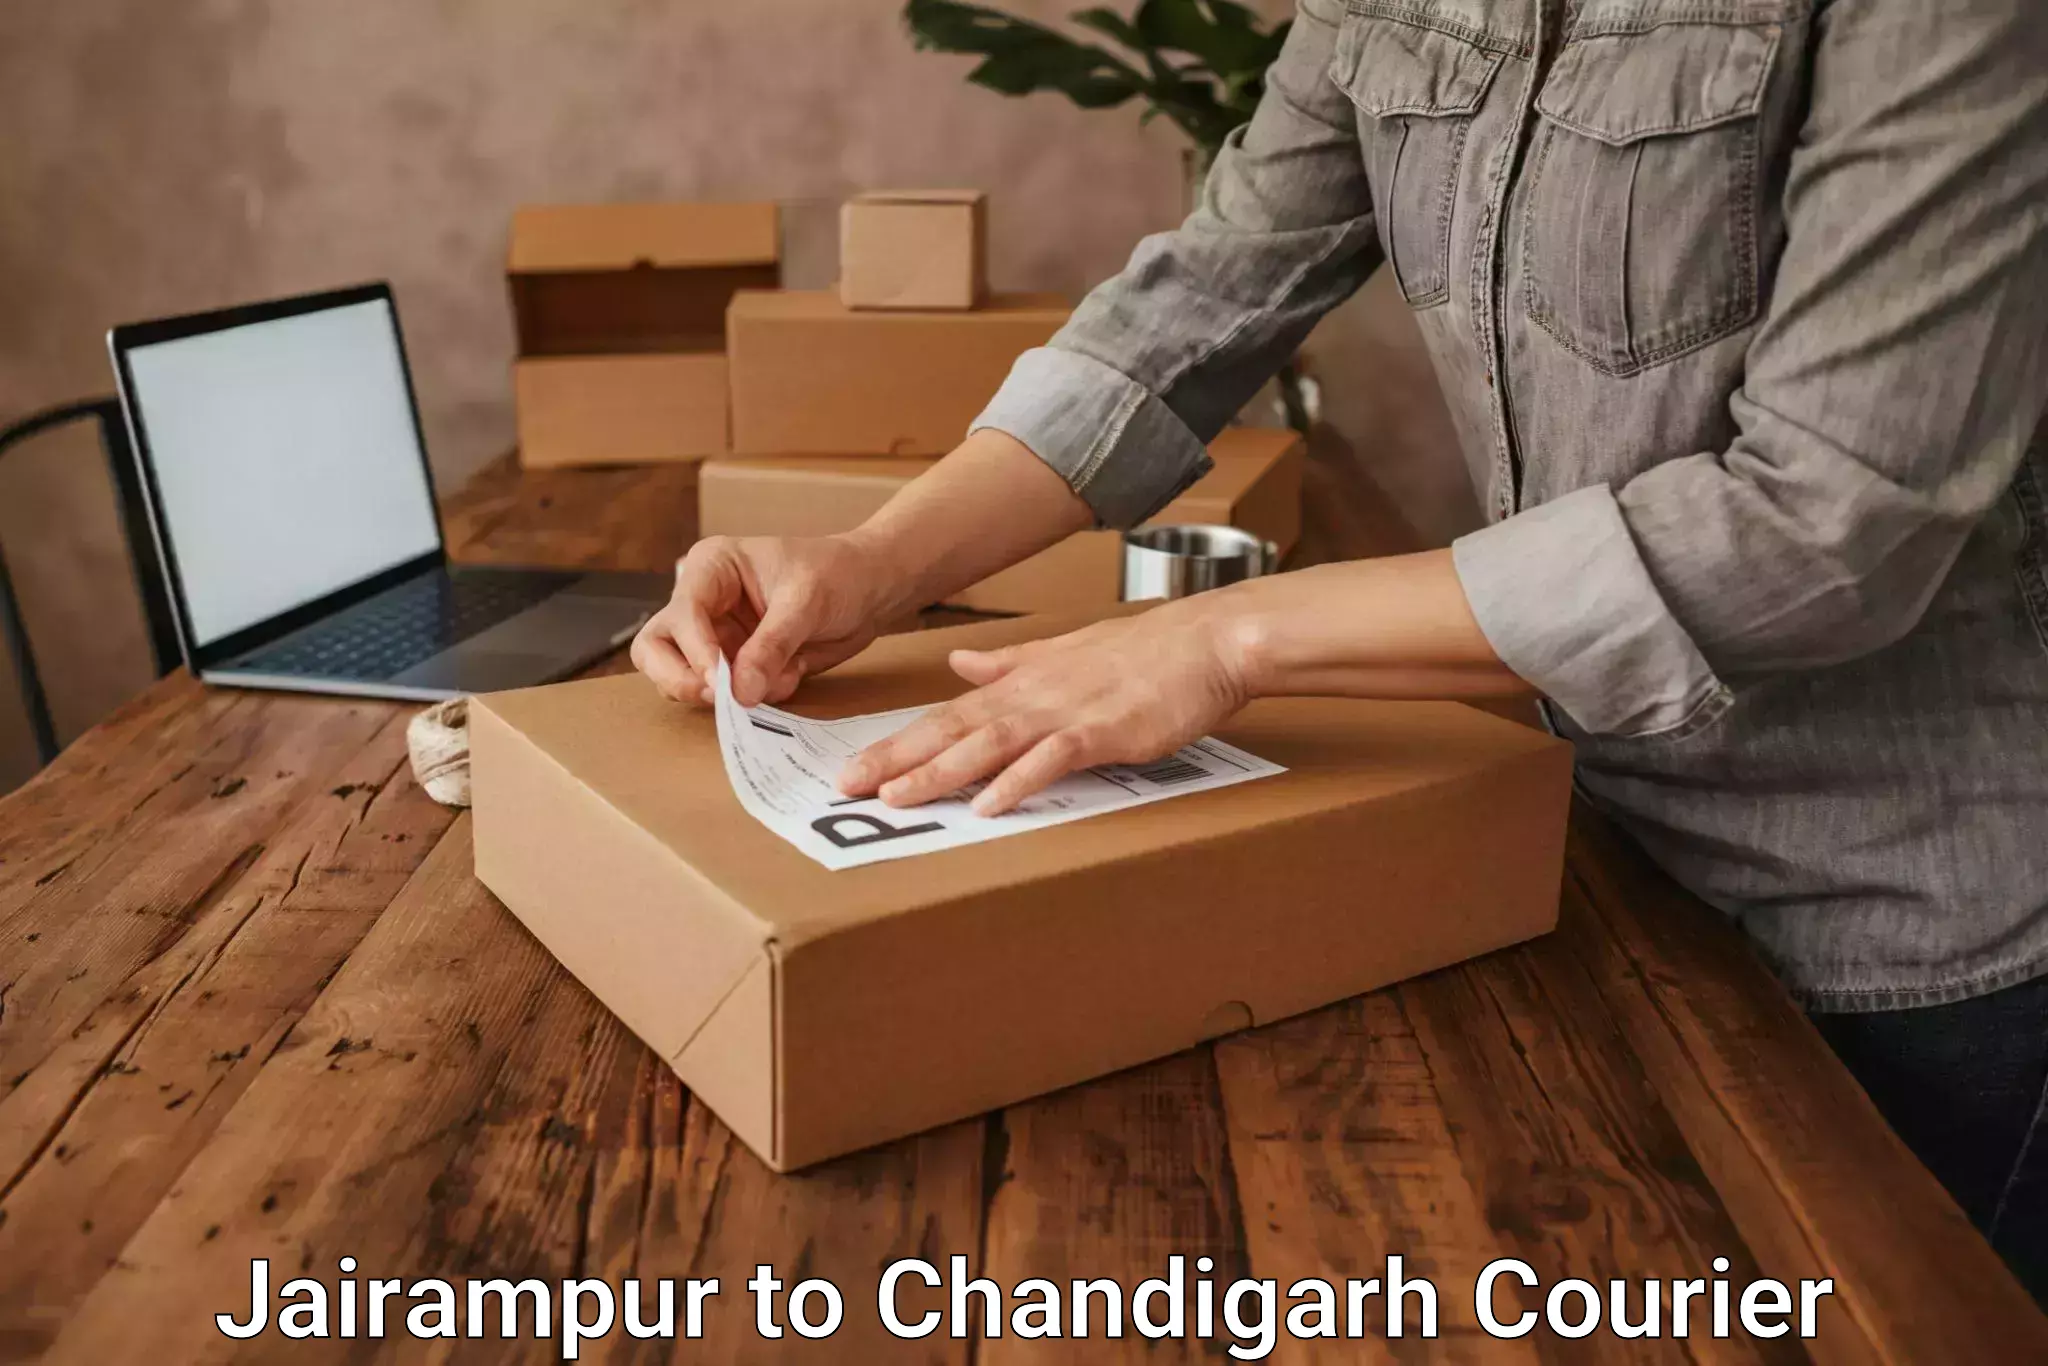 User-friendly courier app Jairampur to Chandigarh